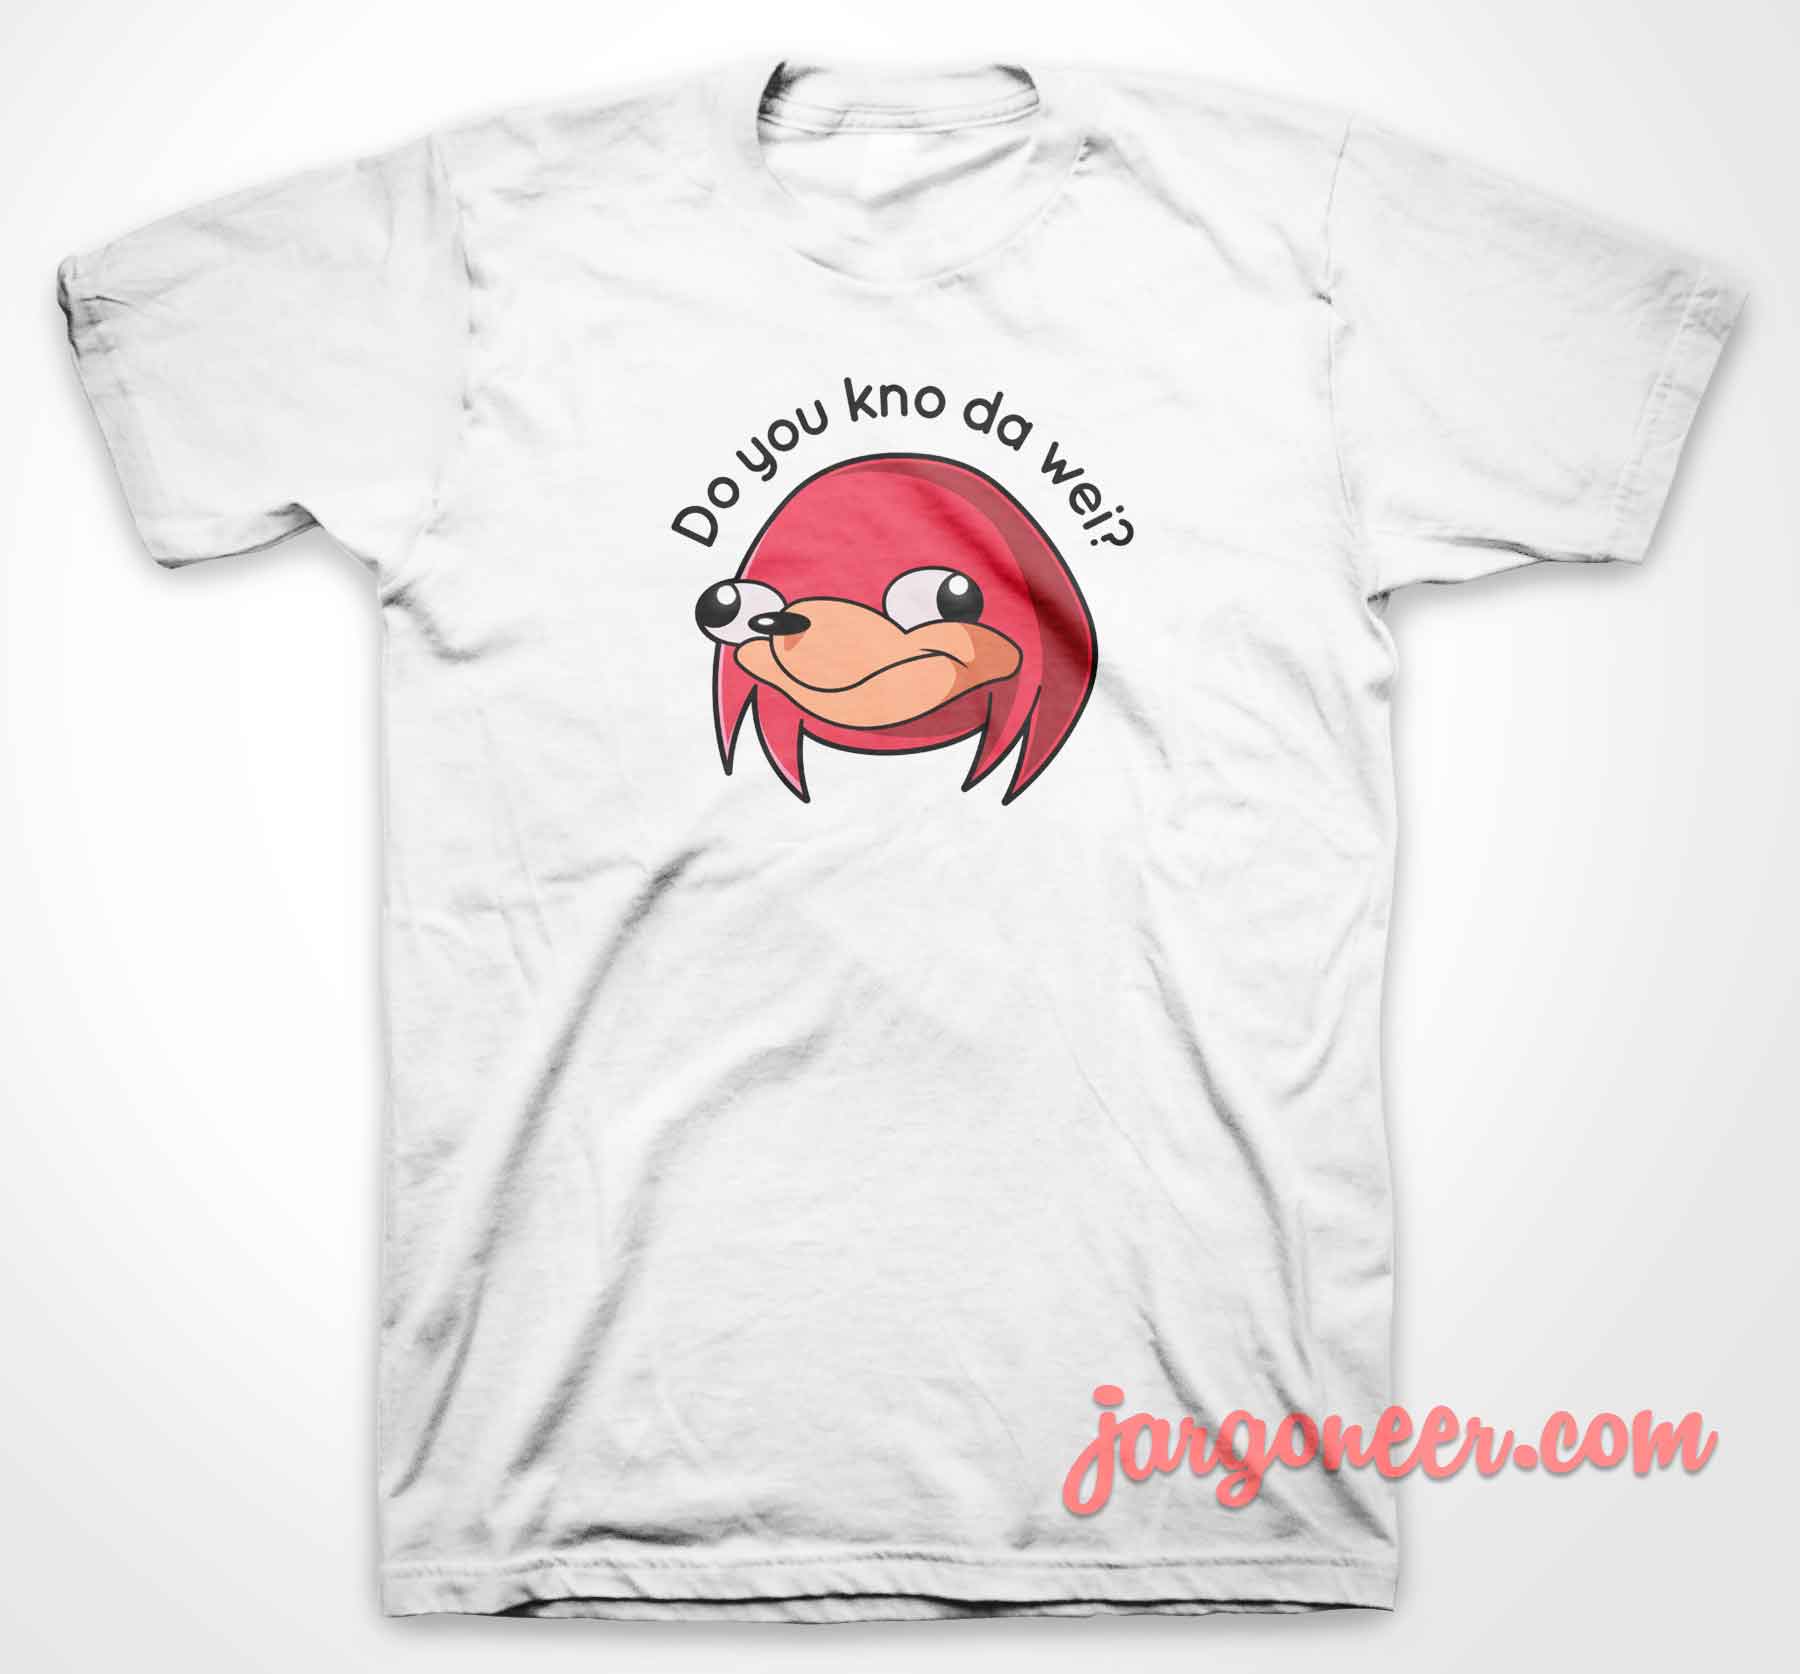 Do You Know Knuckles - Shop Unique Graphic Cool Shirt Designs